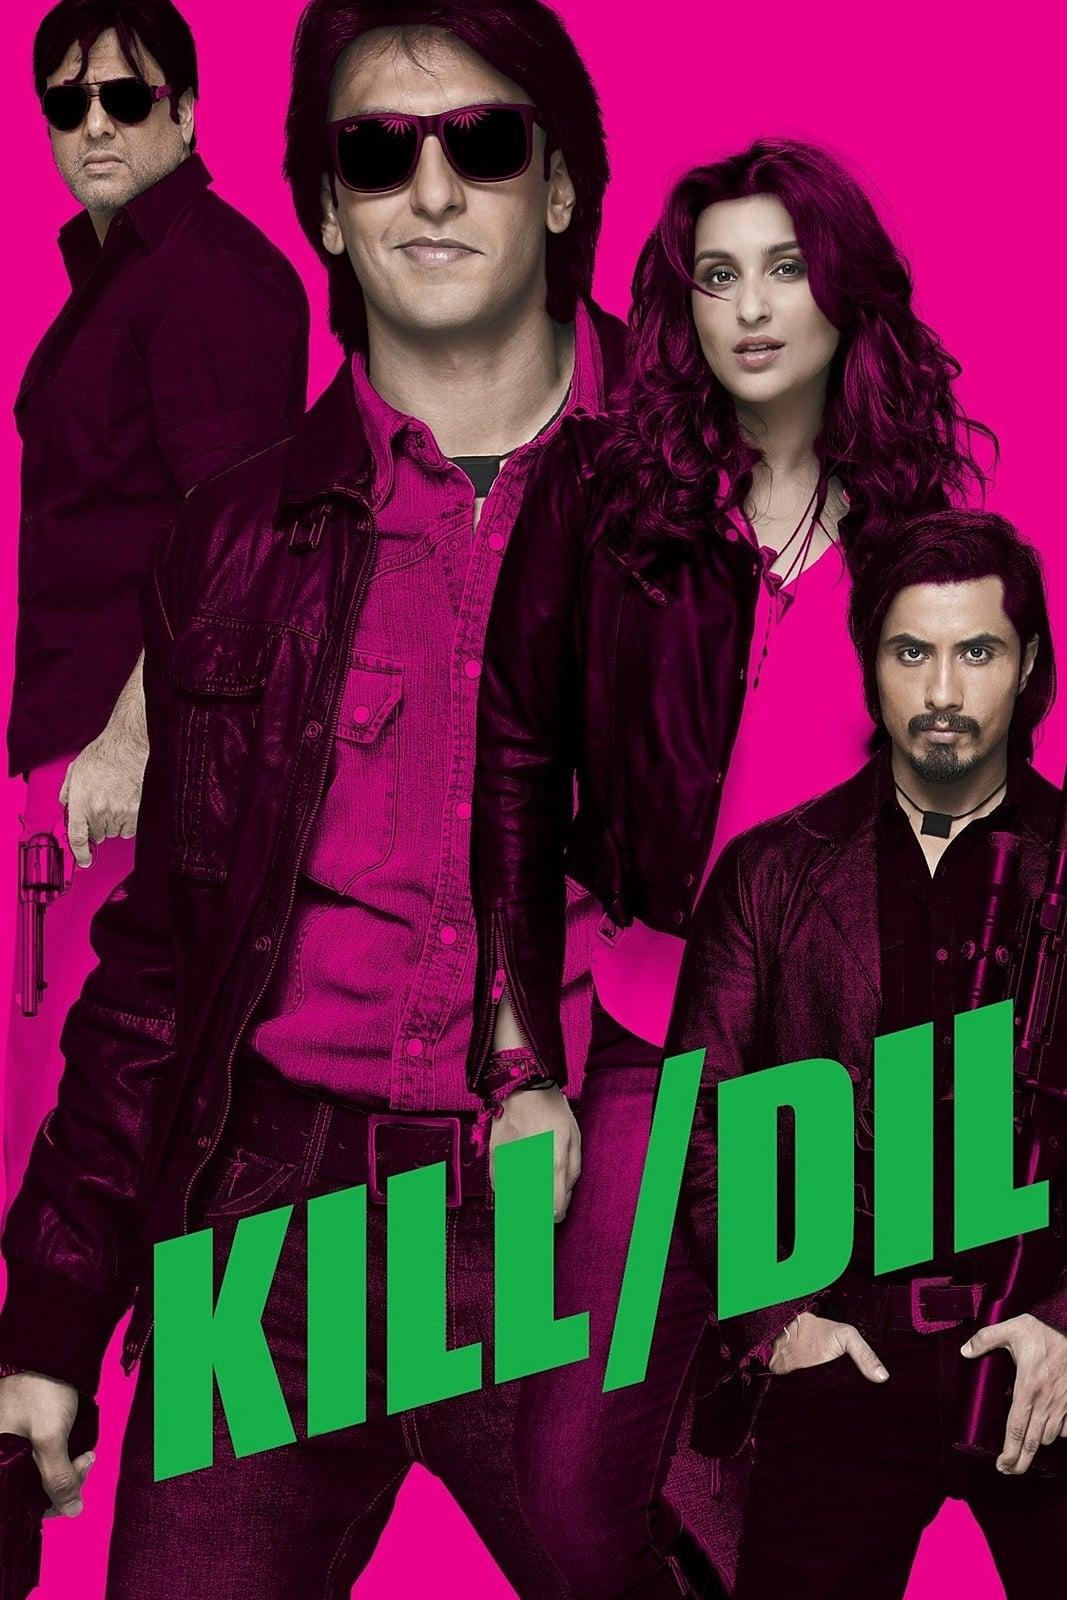 Kill Dil poster